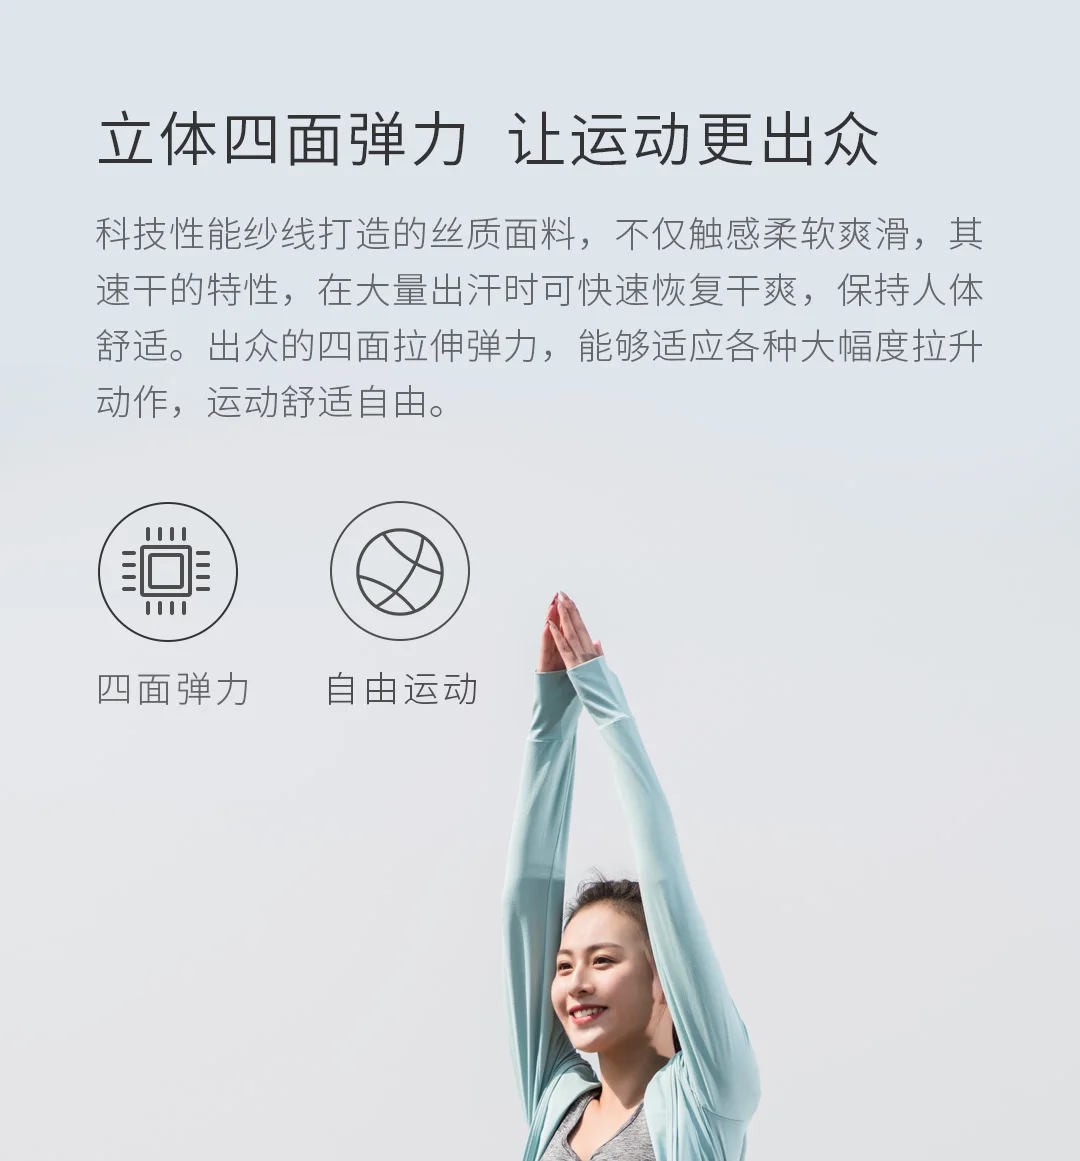 Спортивные брюки Xiaomi Mijia для мужчин и женщин, тактильные, крутые, с мехом, эластичные легкие, мягкие, супер легкие, быстросохнущие спортивные штаны для бега